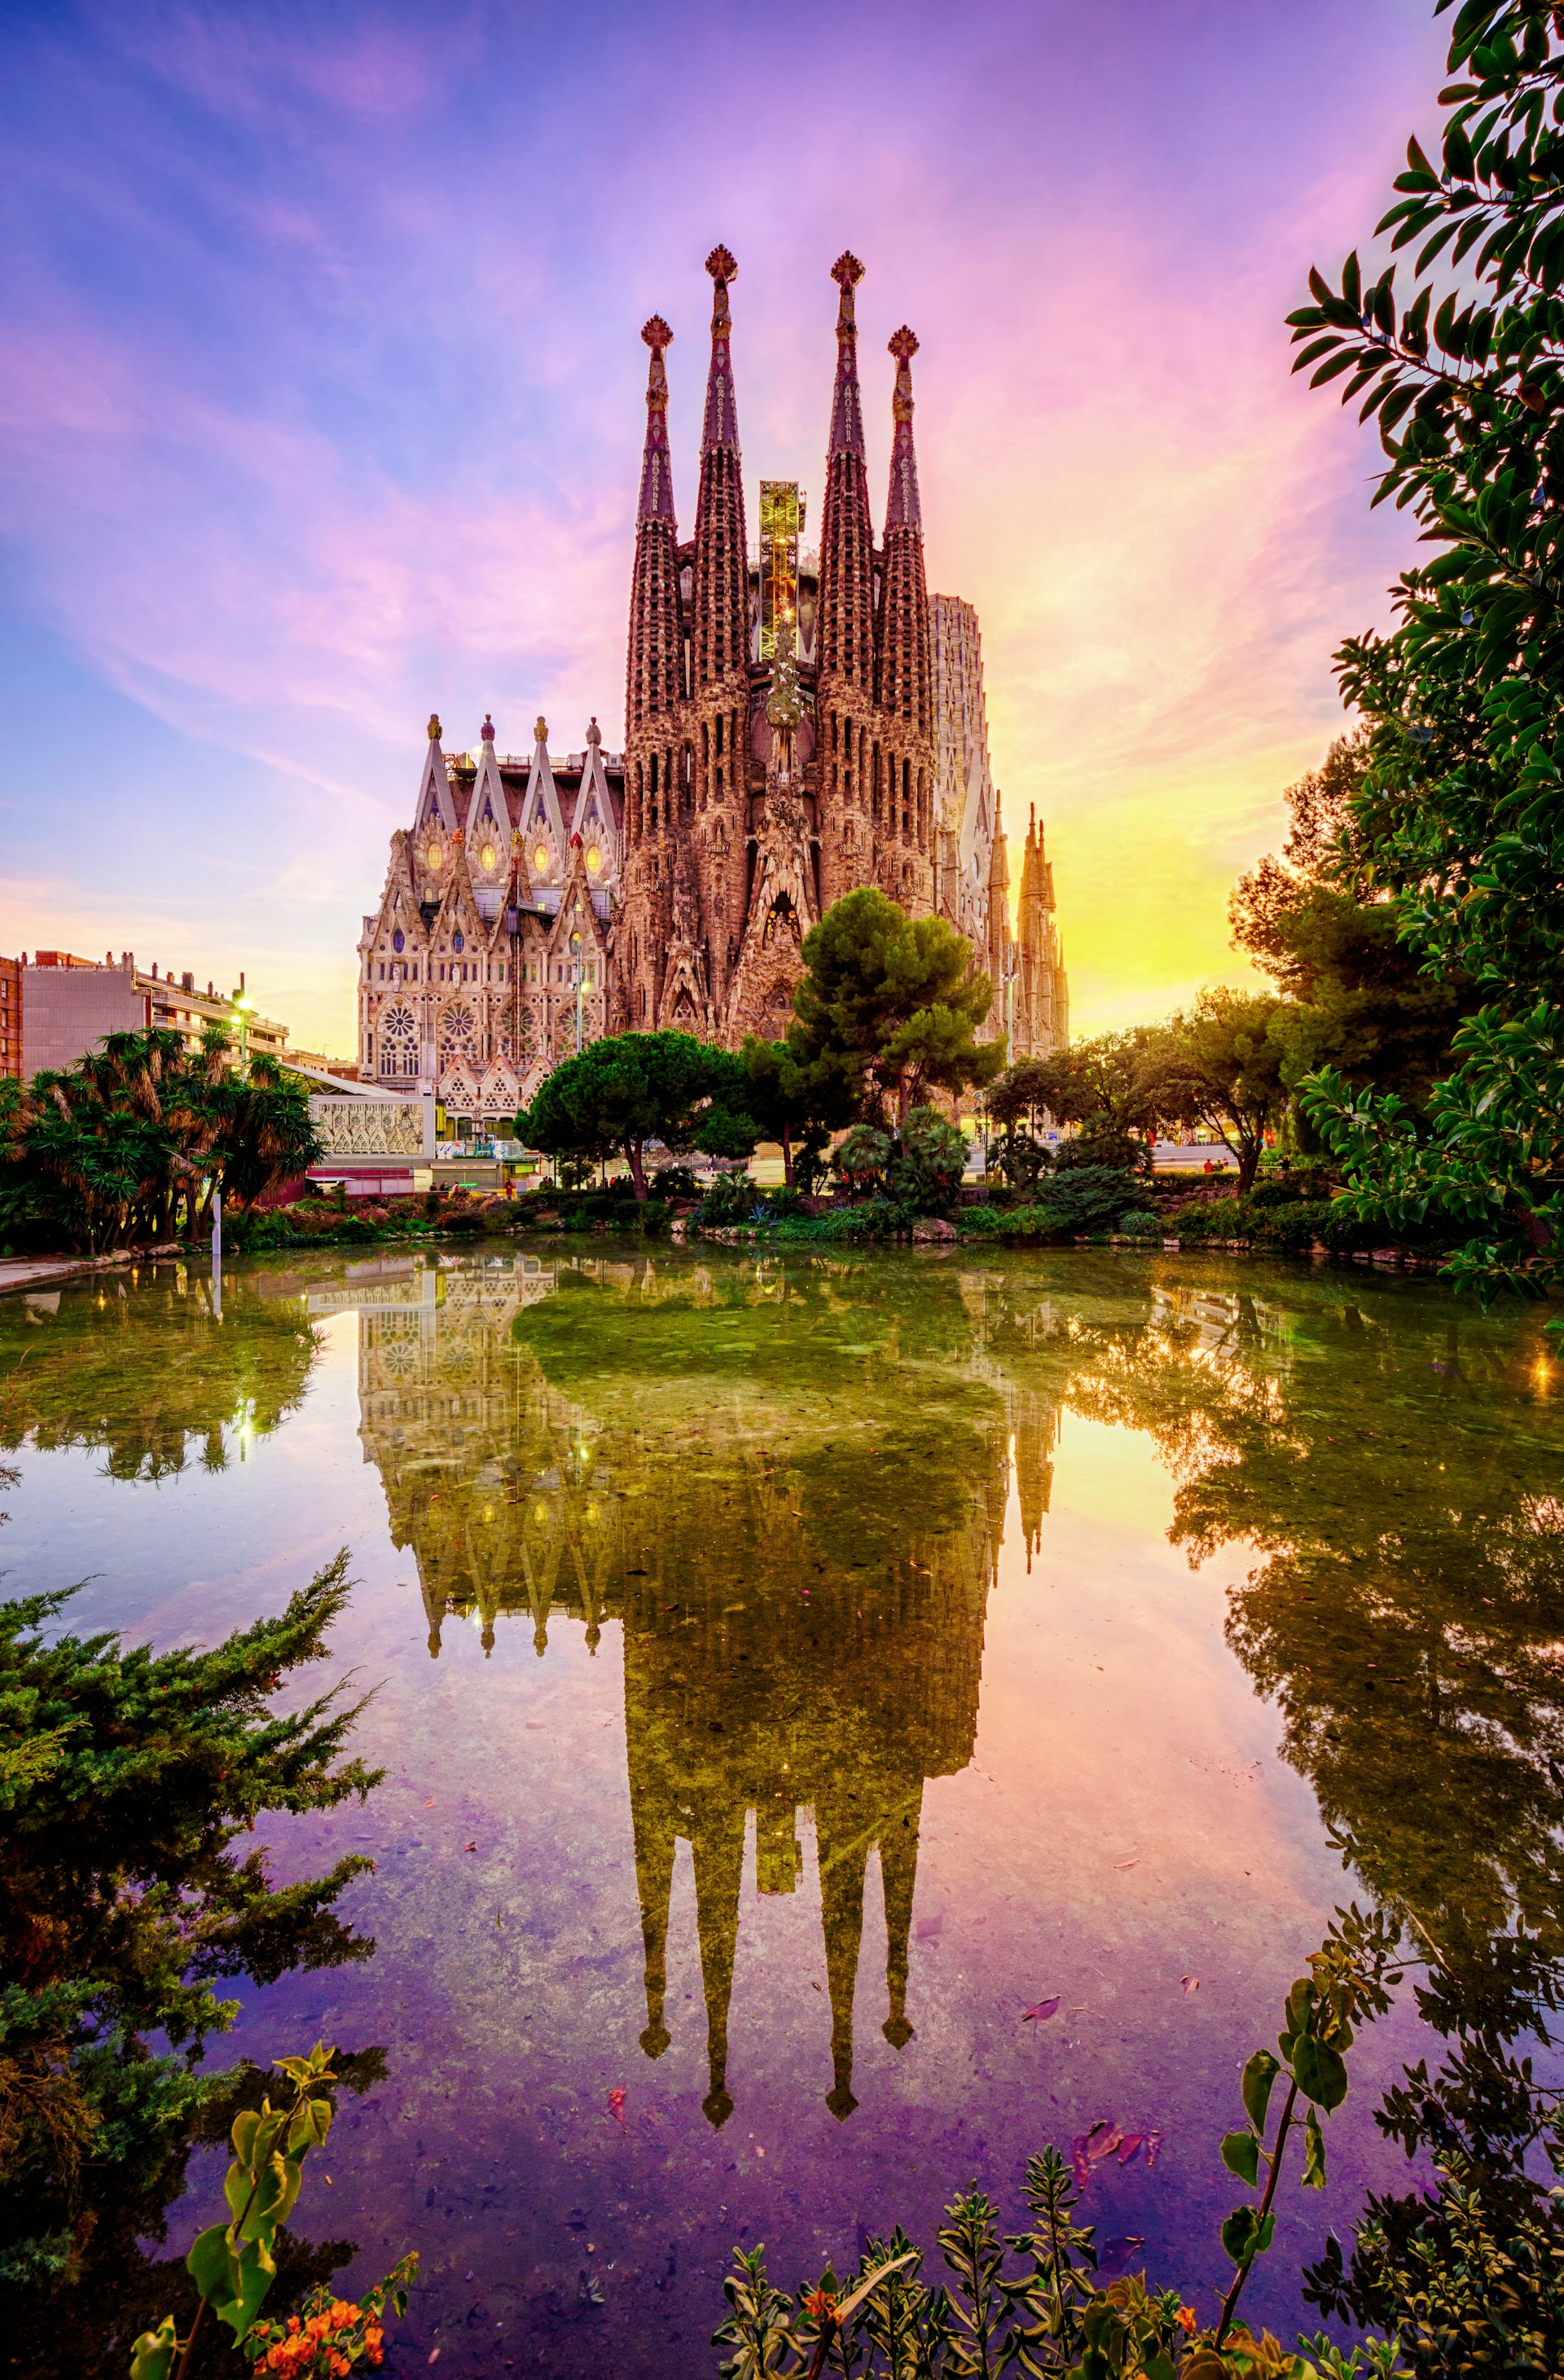 La Sagrada Familia at sunset reflected in a garden pond in Plaza Gaudi in Barcelona, Spain